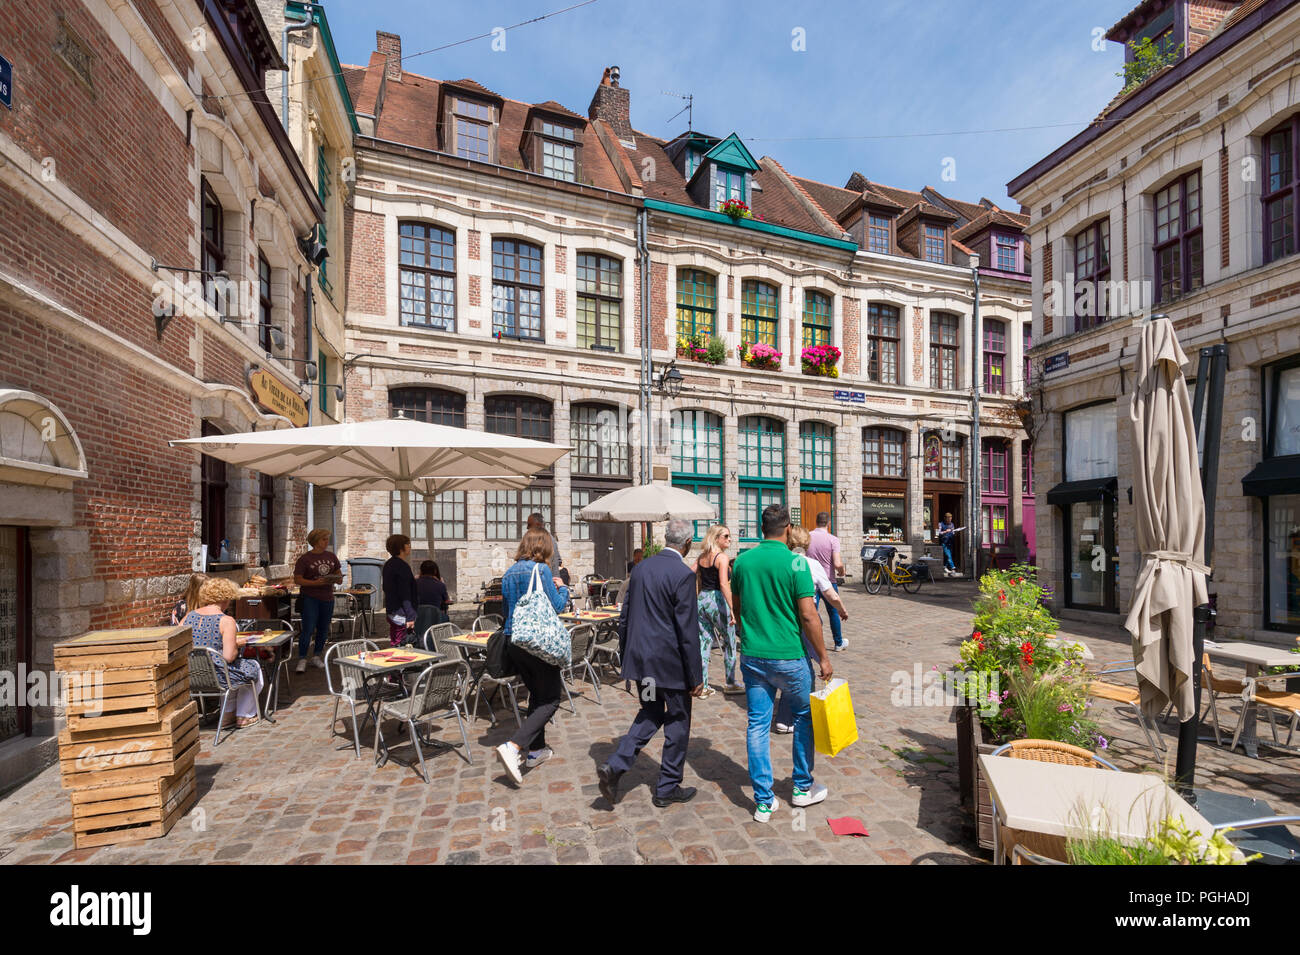 Lille, Francia - 15 Giugno 2018: piazza lastricata 'Place des oignons', situato nel quartiere storico di Vieux Lille Foto Stock